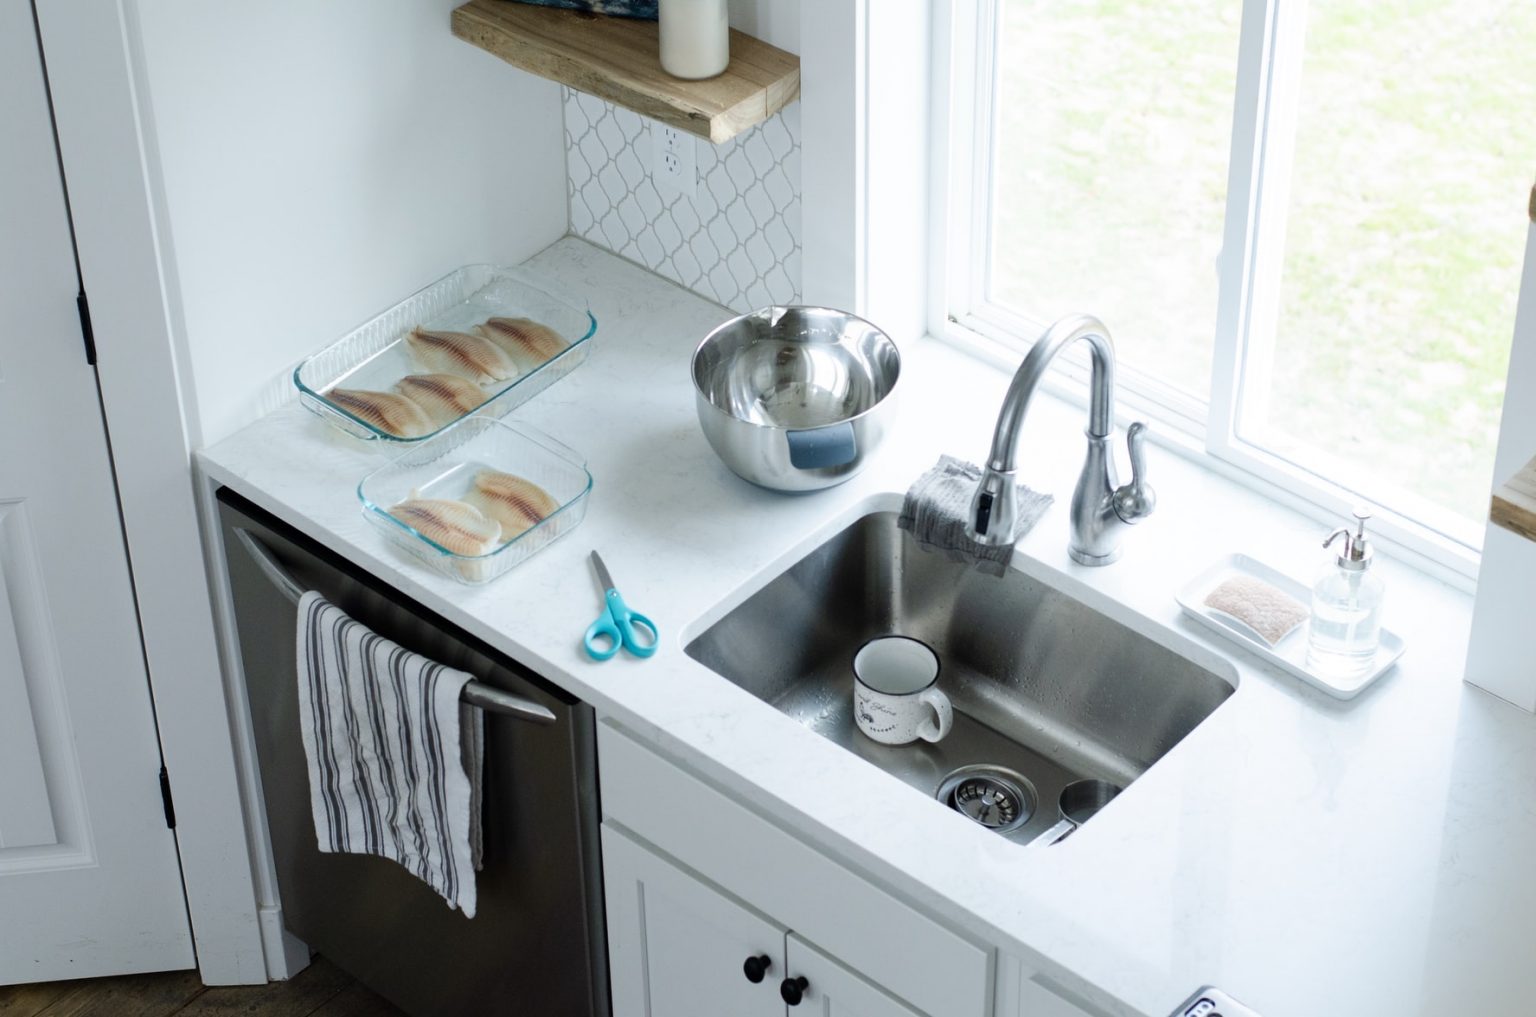 snaking kitchen sink with desposal